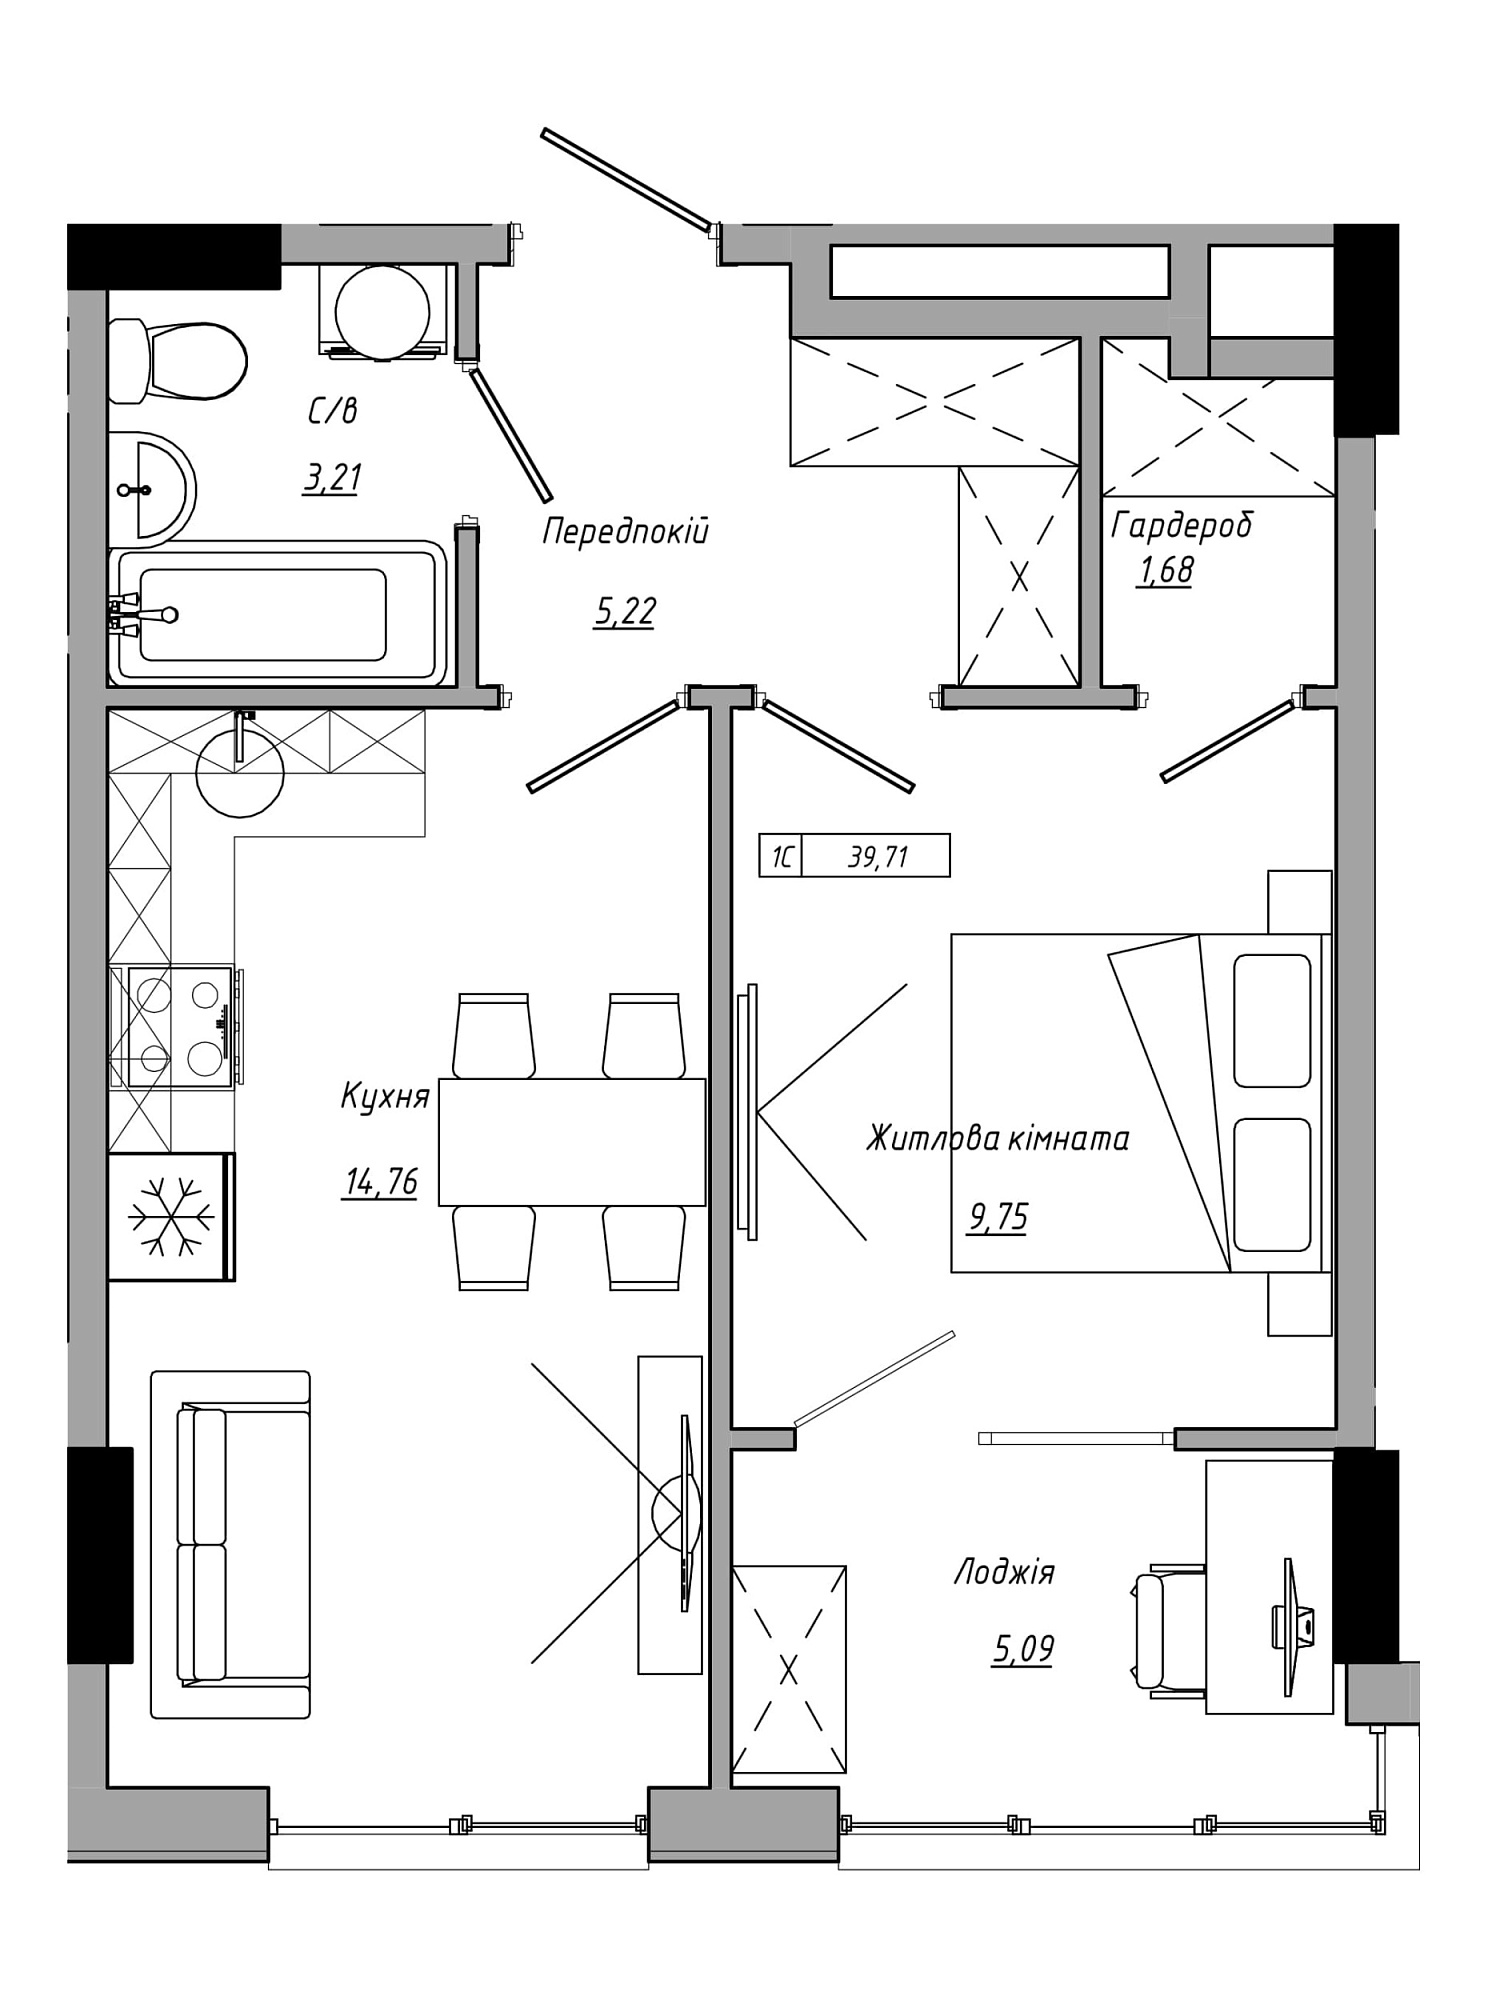 Планування 1-к квартира площею 39.71м2, AB-21-07/00021.